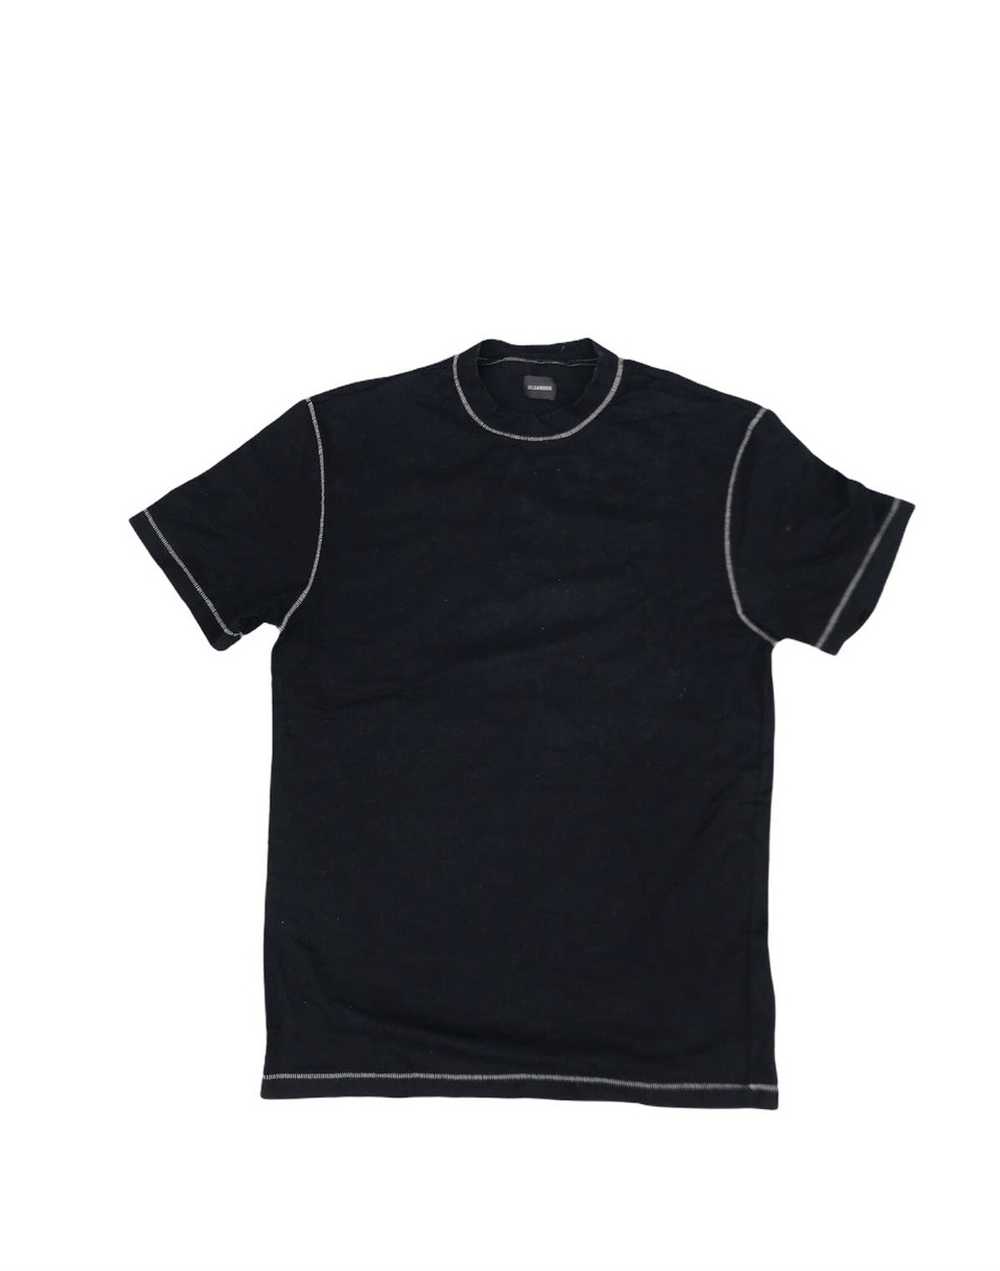 Jil Sander Jil Sander Black Plain Tshirt - image 1